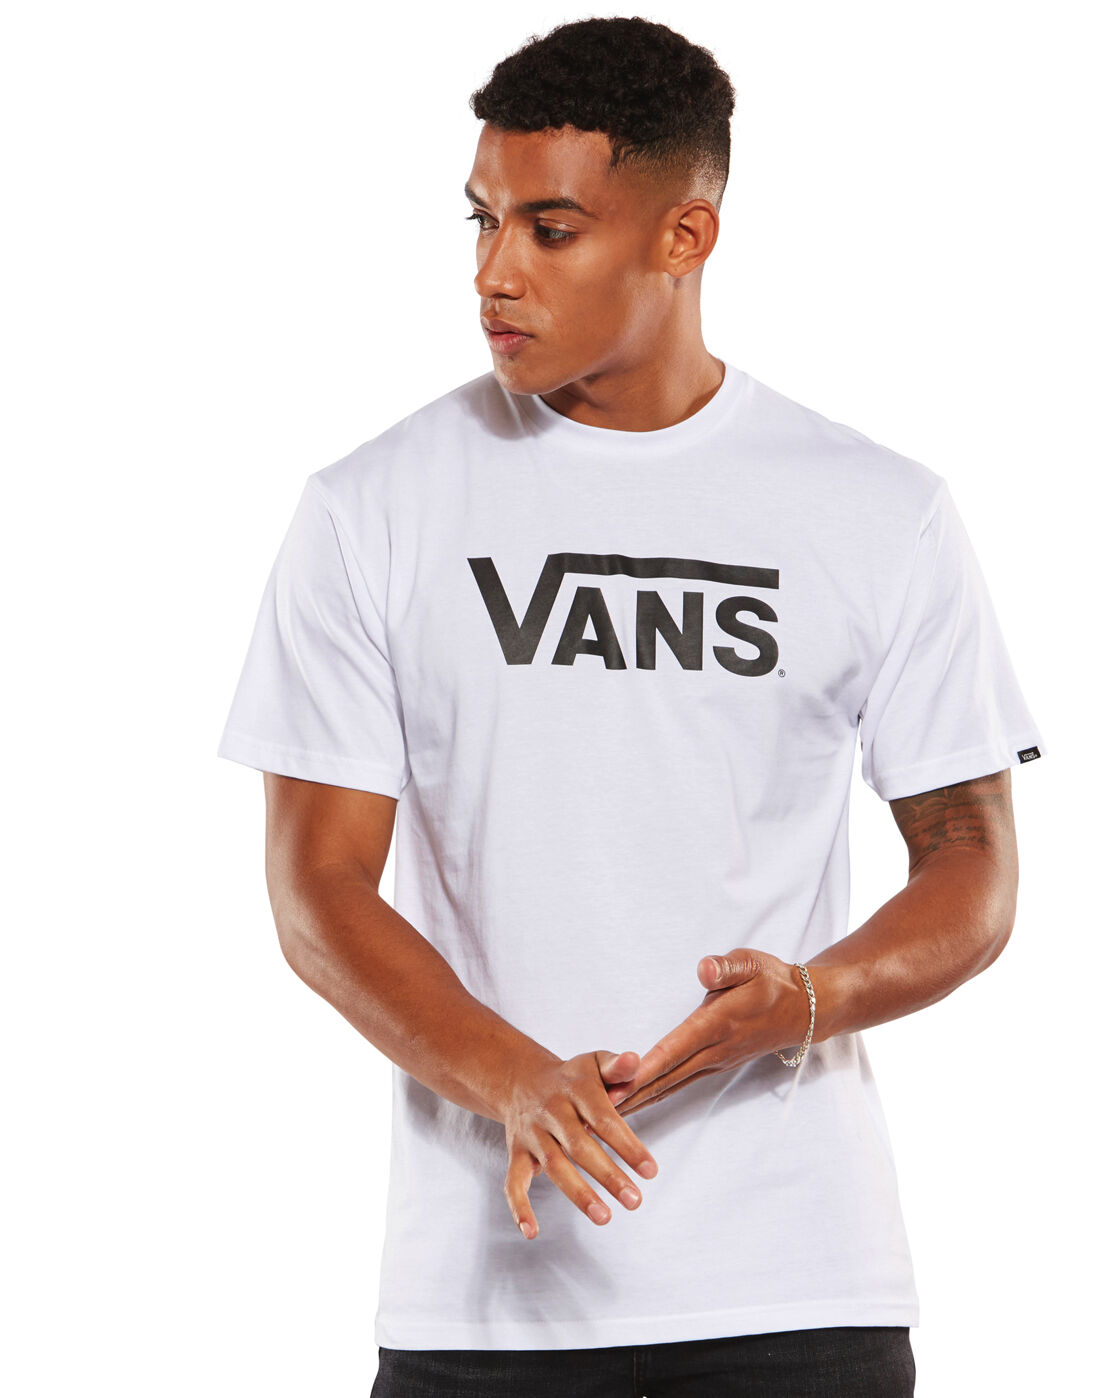 Men's White Vans T-Shirt | Life Style 